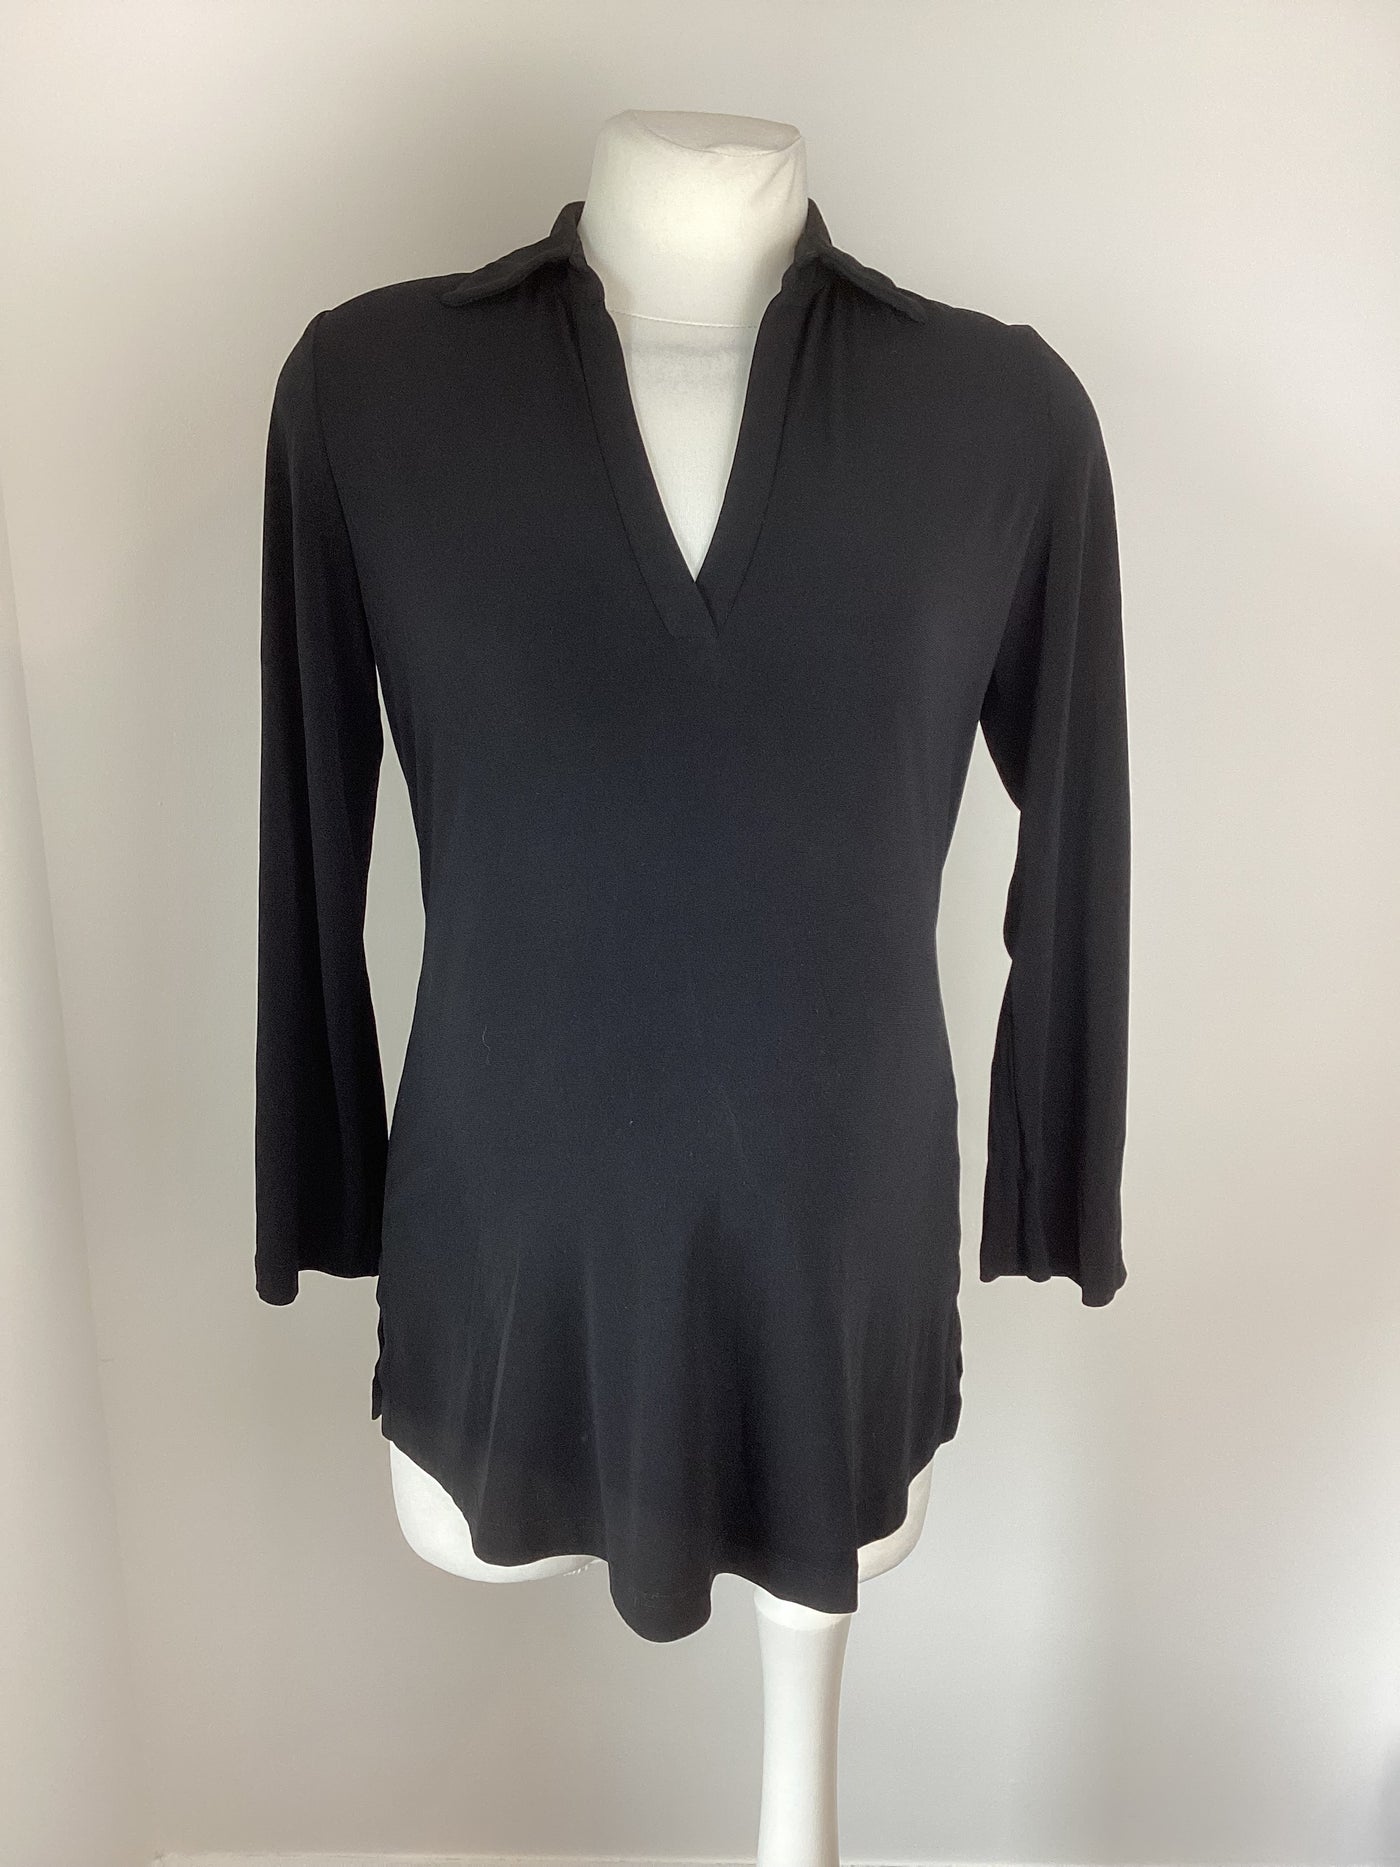 Liz Lange black long sleeved stretch top - Size 2 (Approx UK 10)